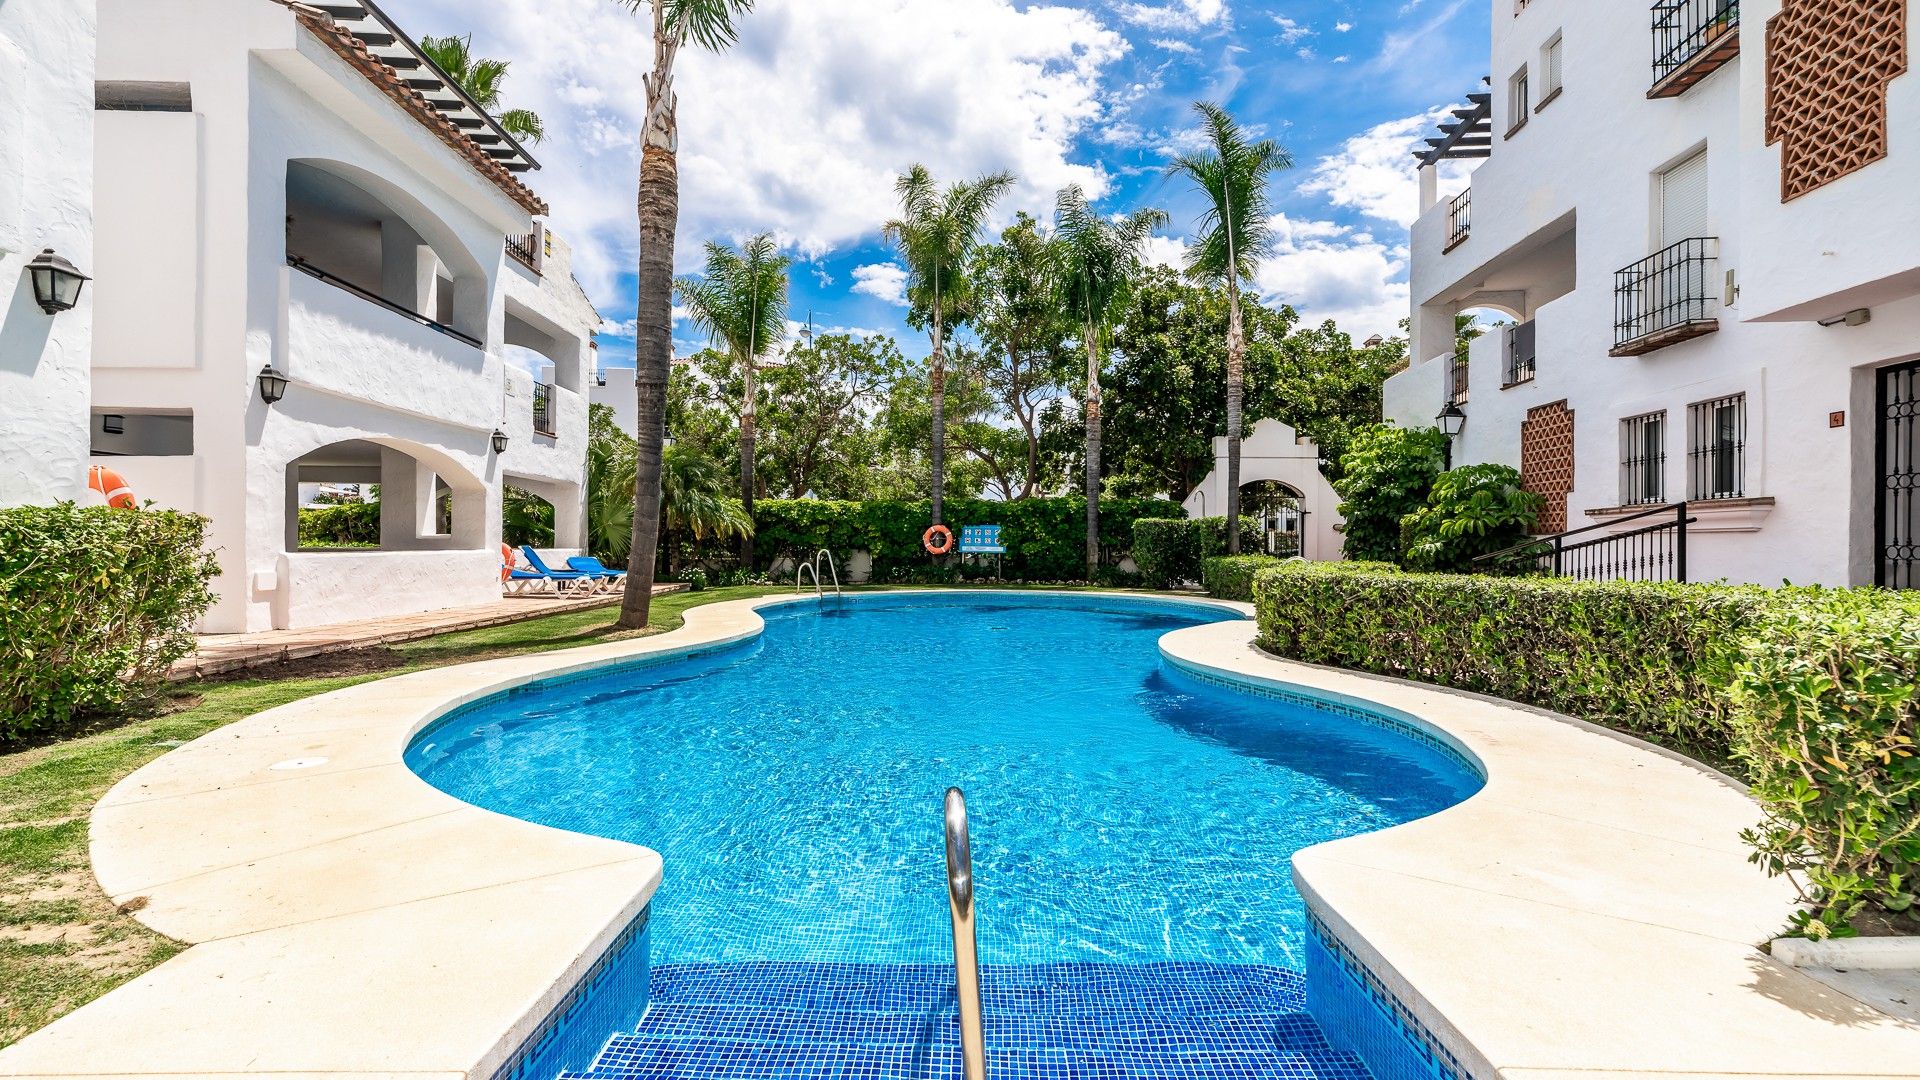 Luxurious garden apartment, only steps away from the beach | Engel & Völkers Marbella